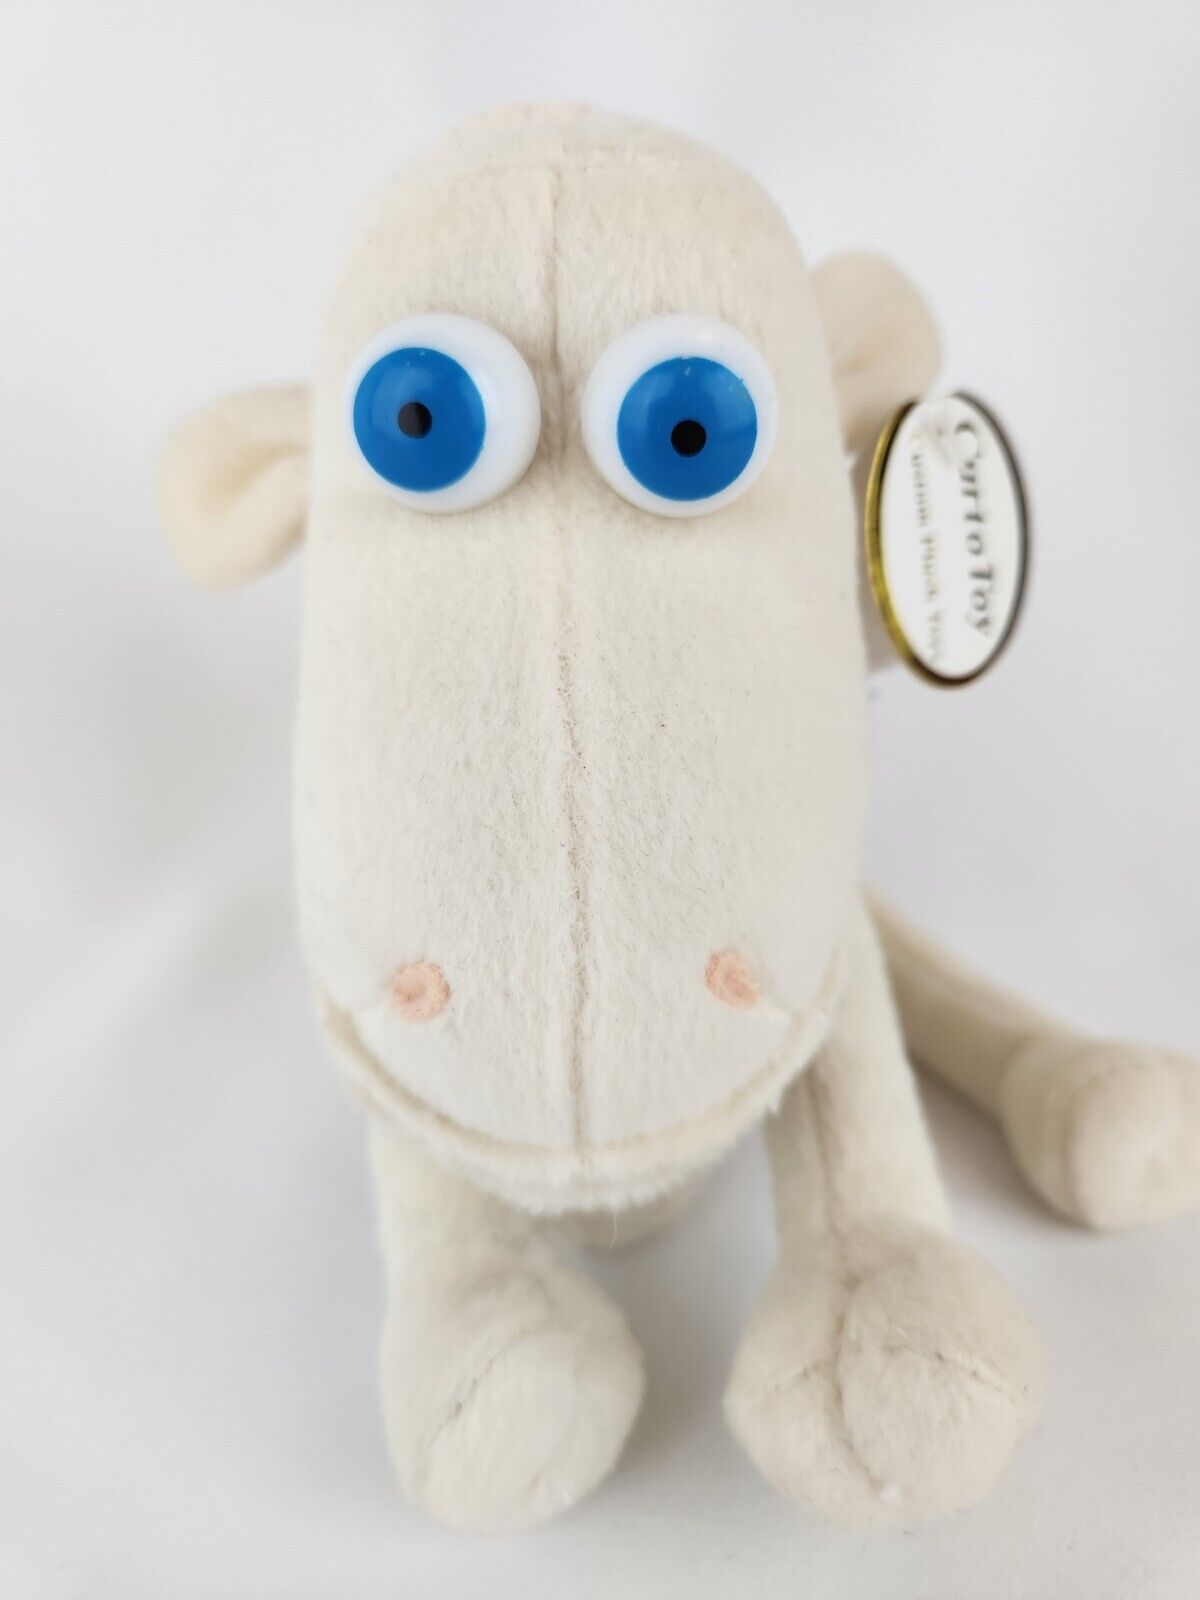 SERTA Counting Sheep #1 Promo Plush w/ Blue Eyes Mattress Animal Original 2012 